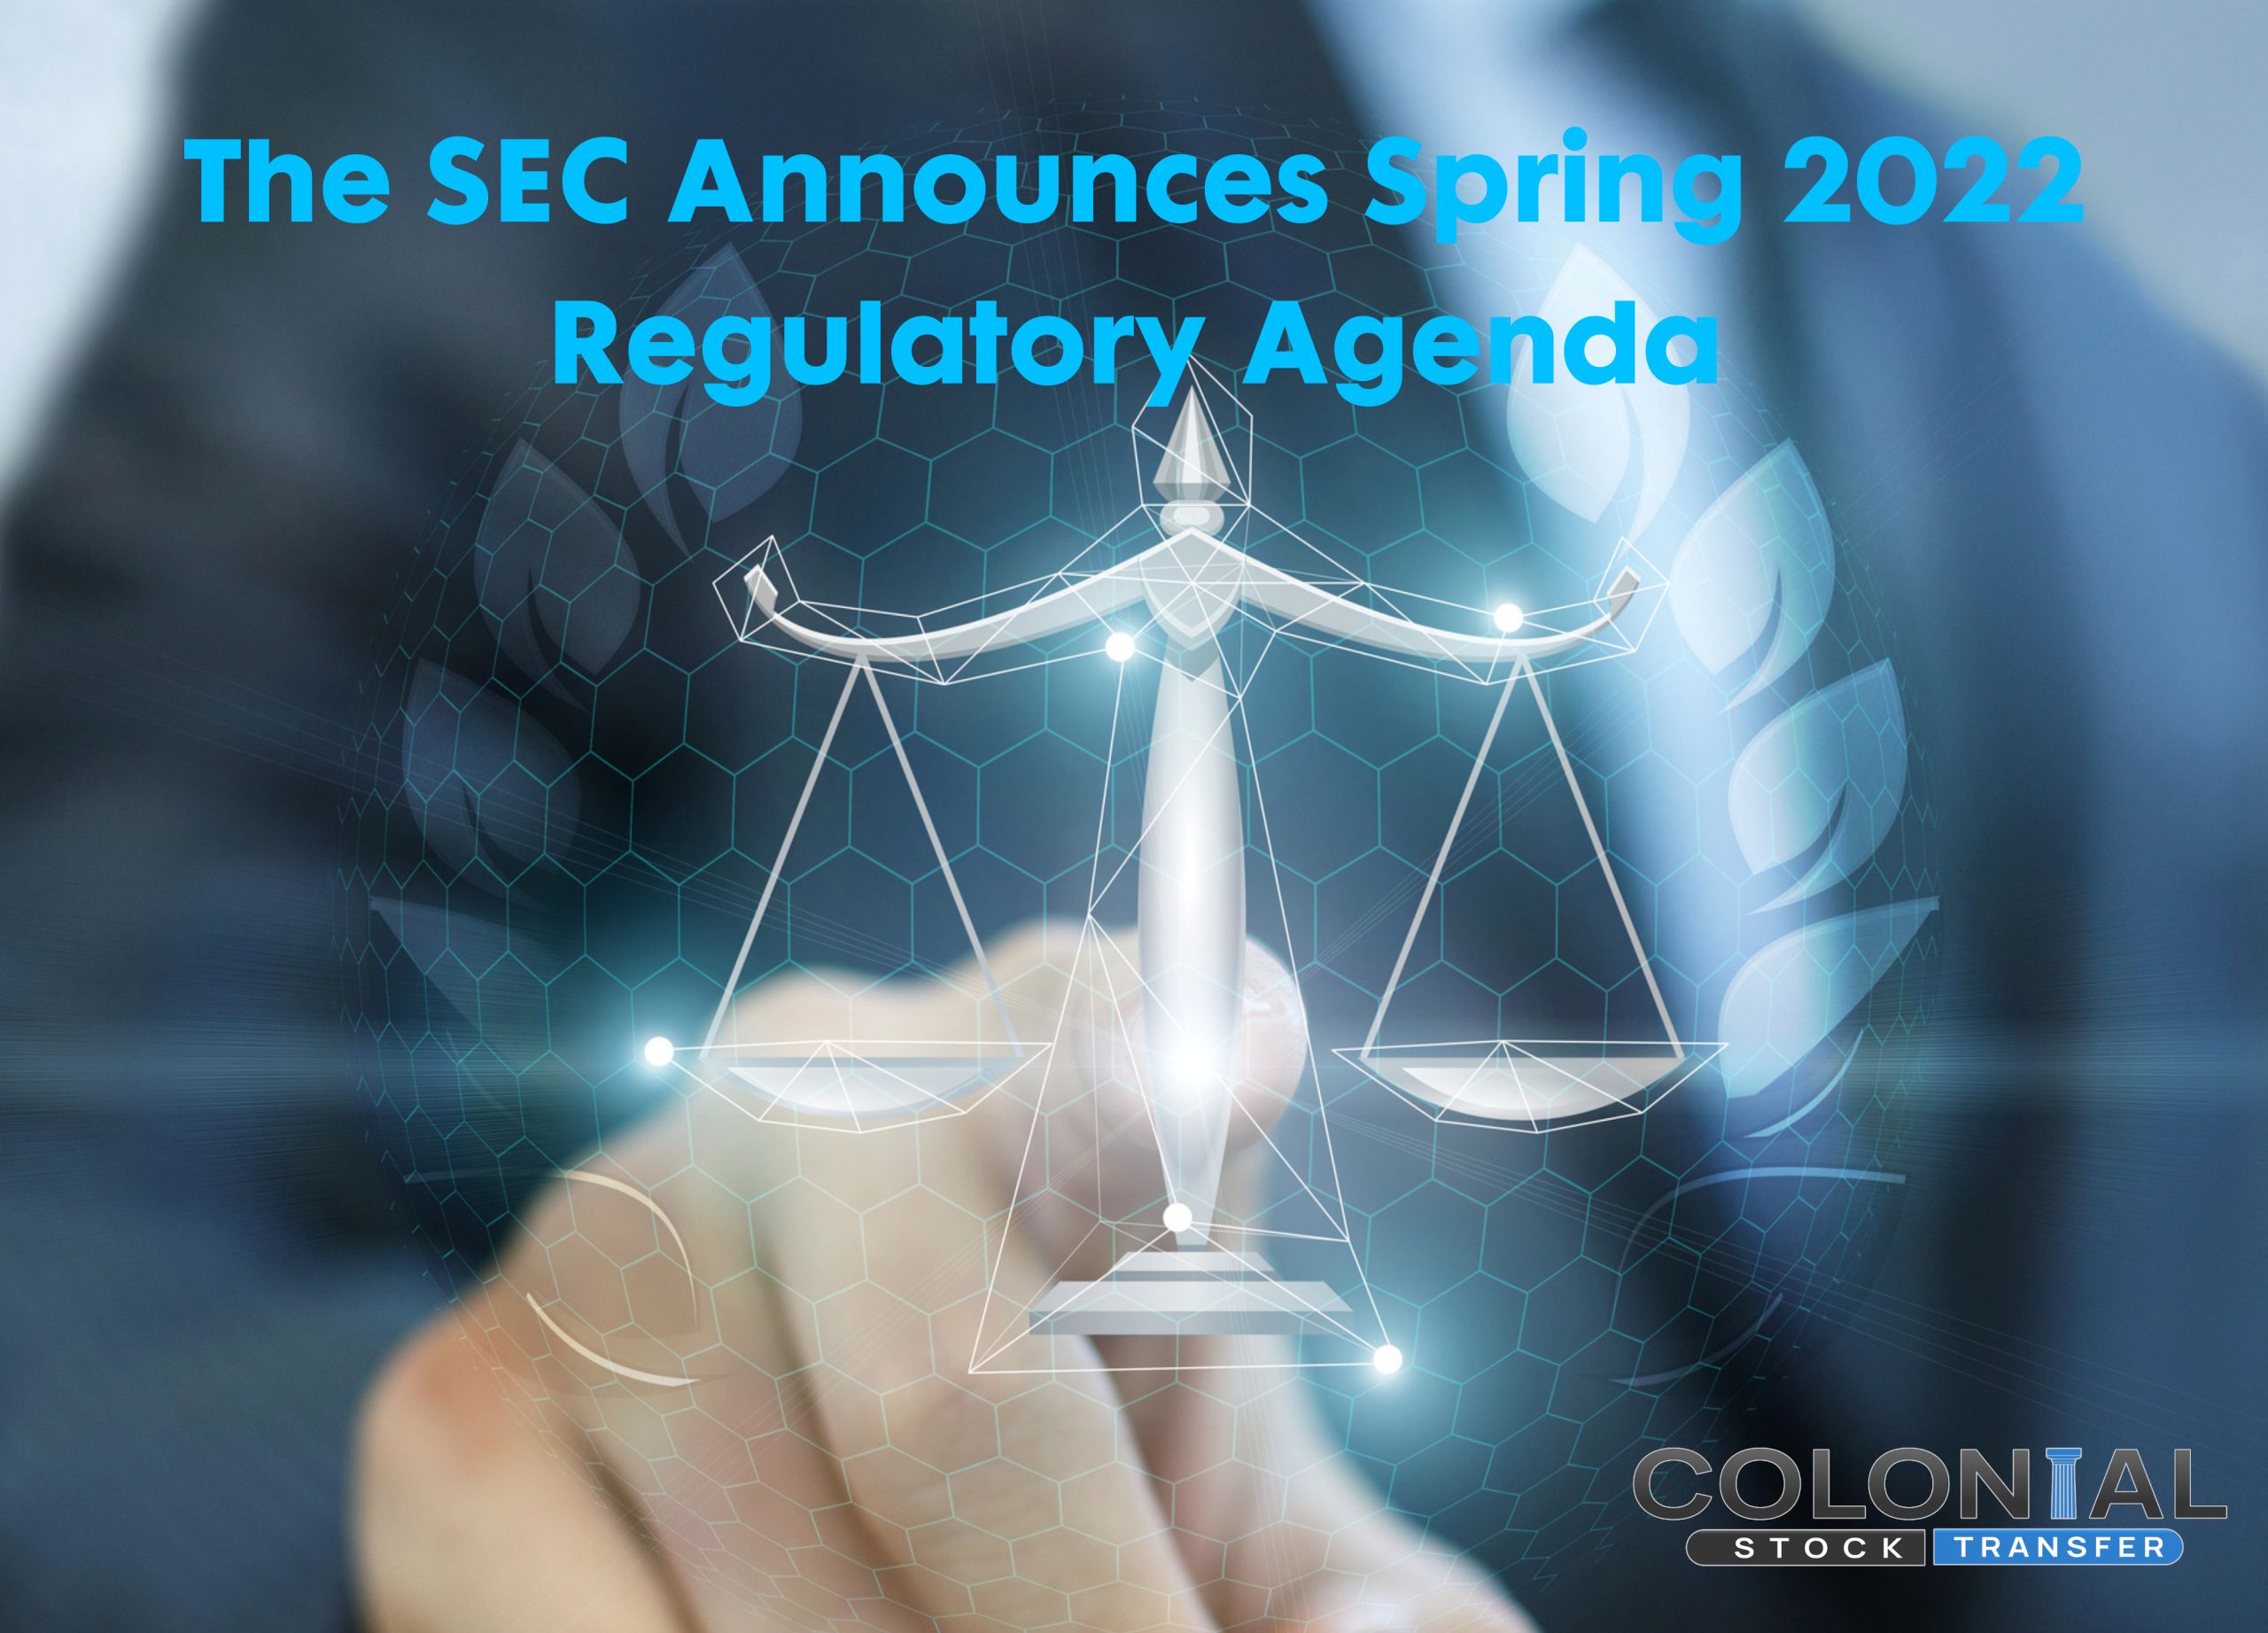 The SEC Announces Spring 2022 Regulatory Agenda